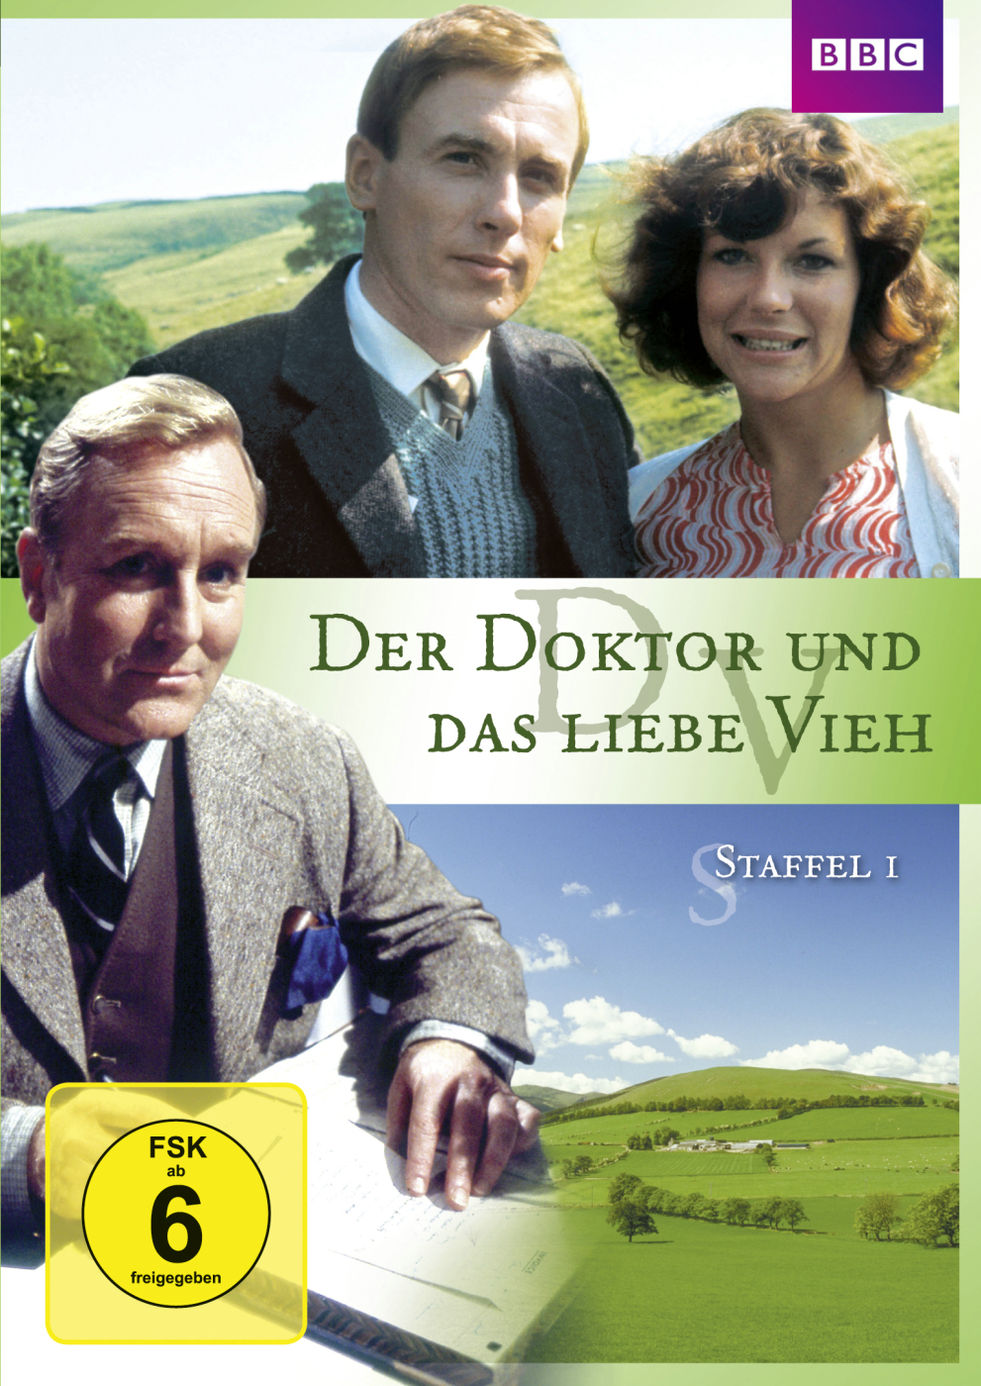 Der Doktor und das liebe Vieh - Staffel 1 DVD | Weltbild.de